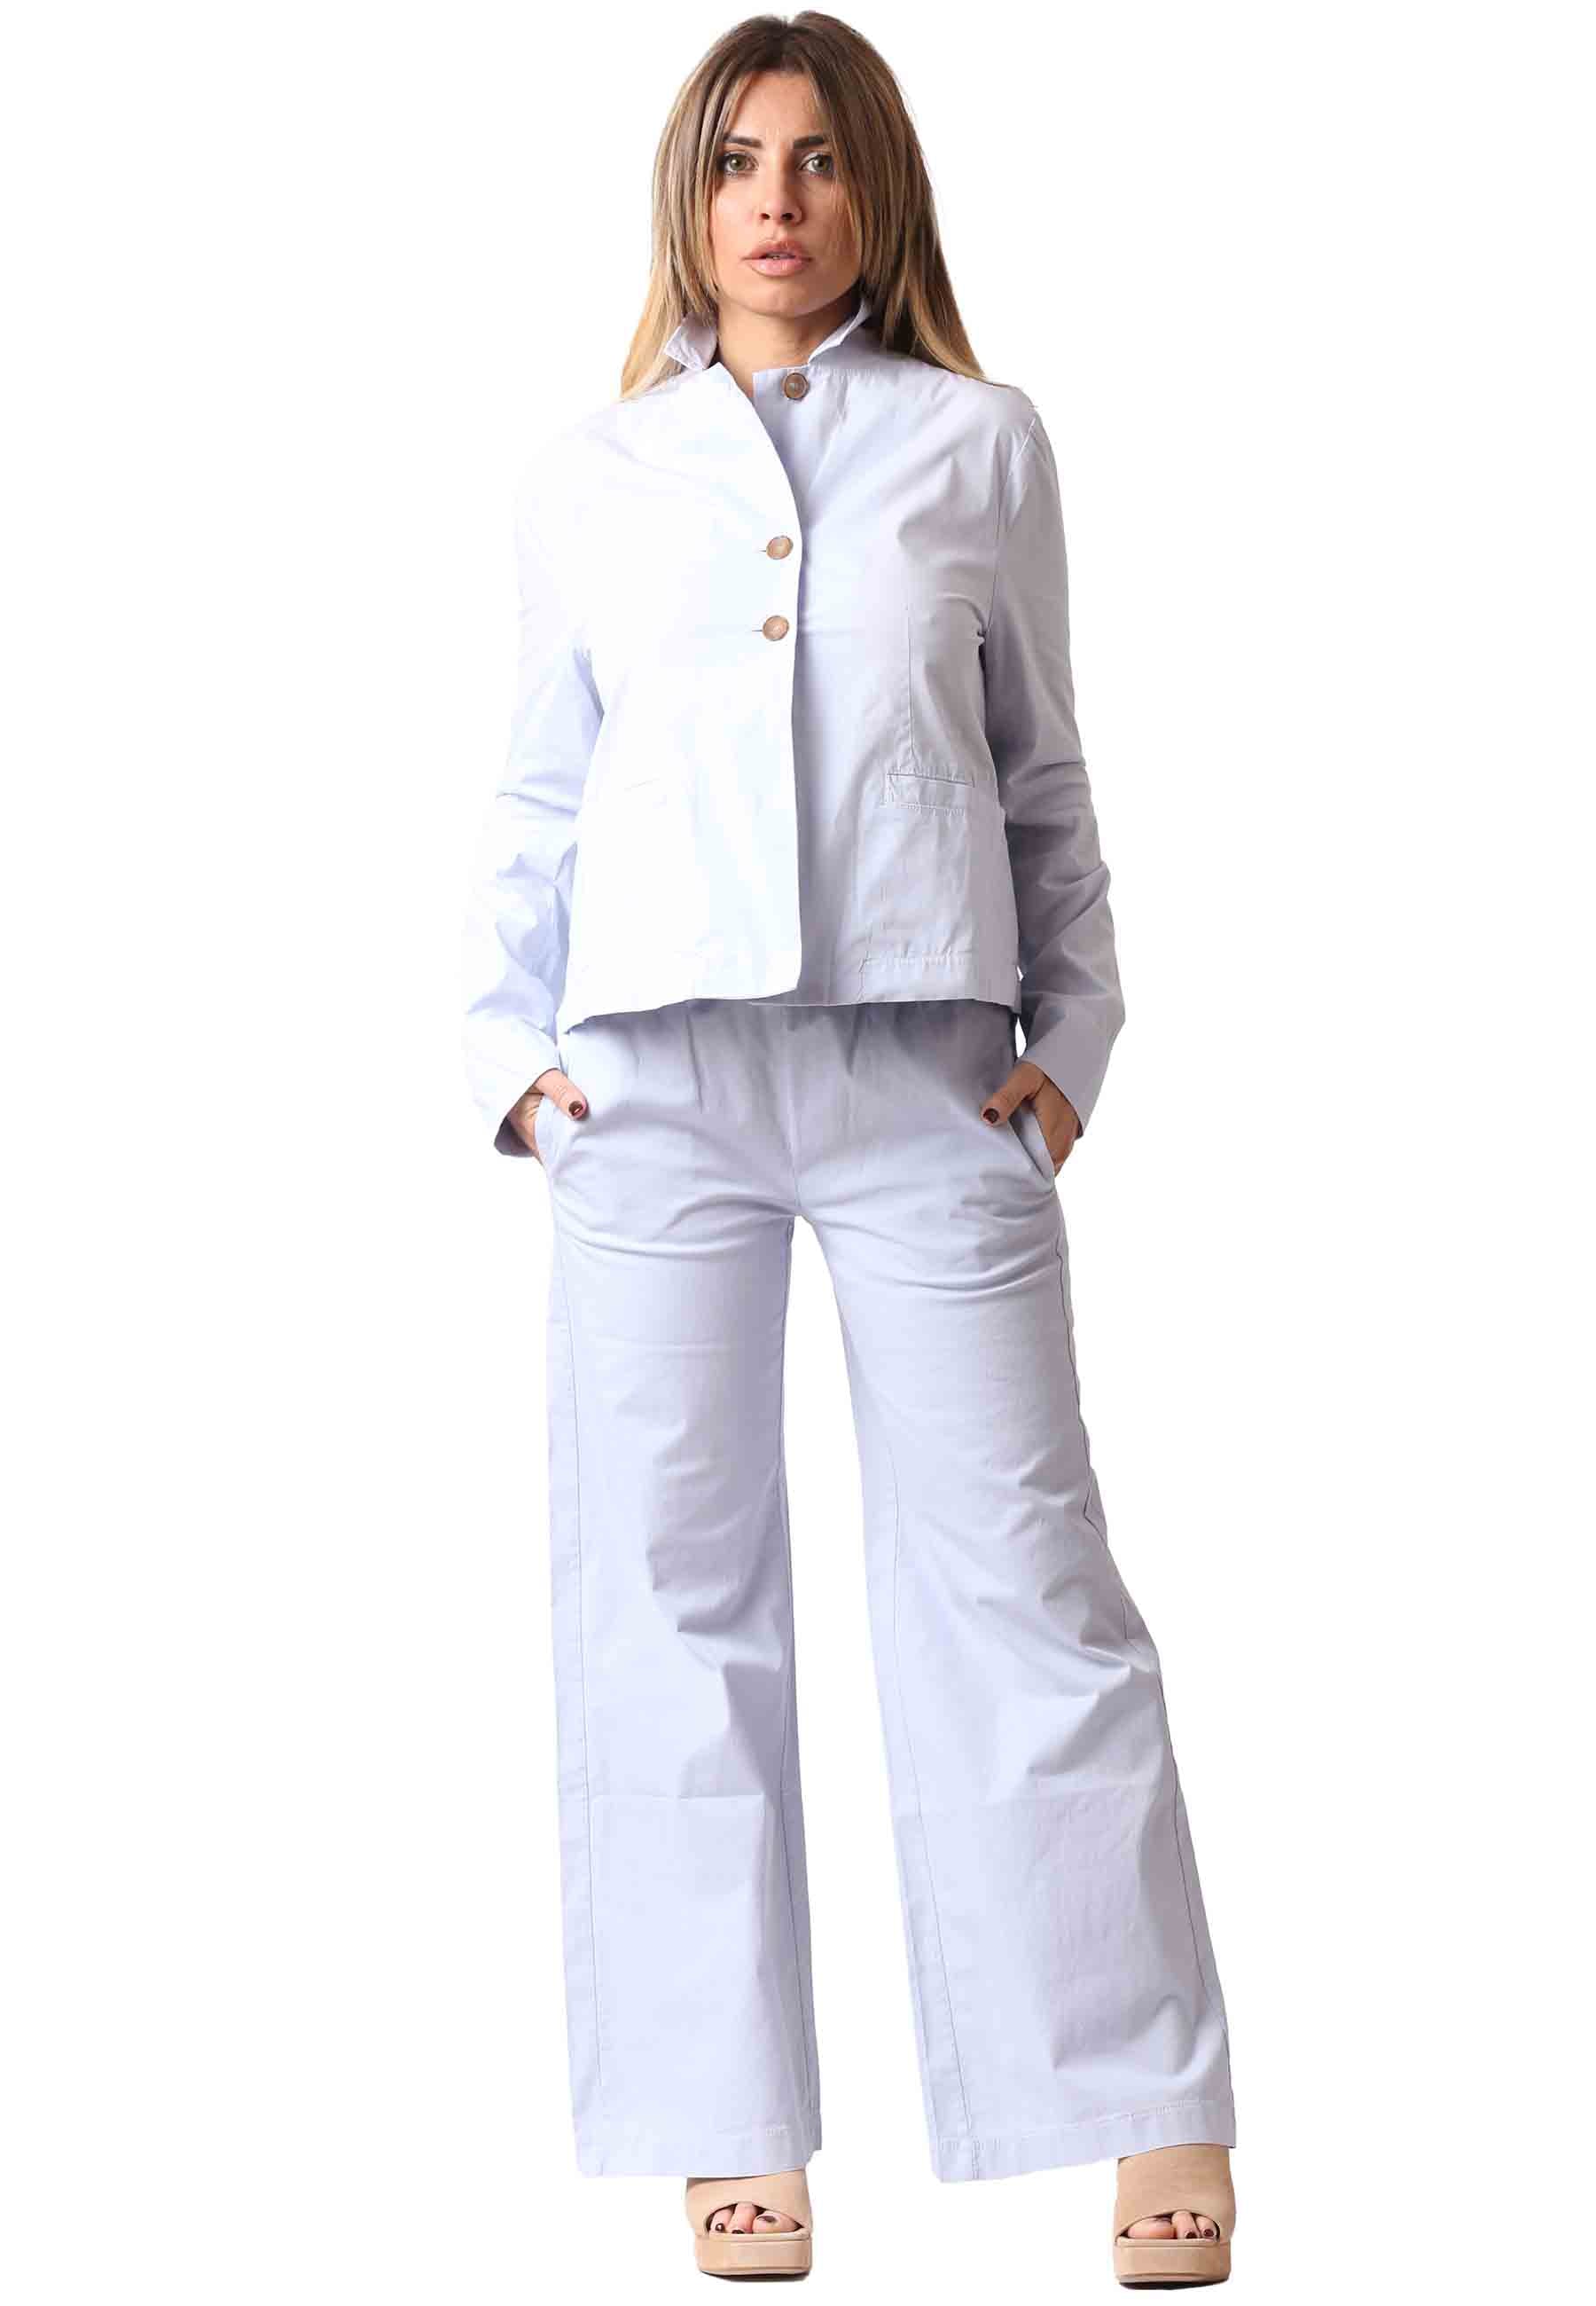 Pantalon femme Palma en coton bleu clair avec taille élastique